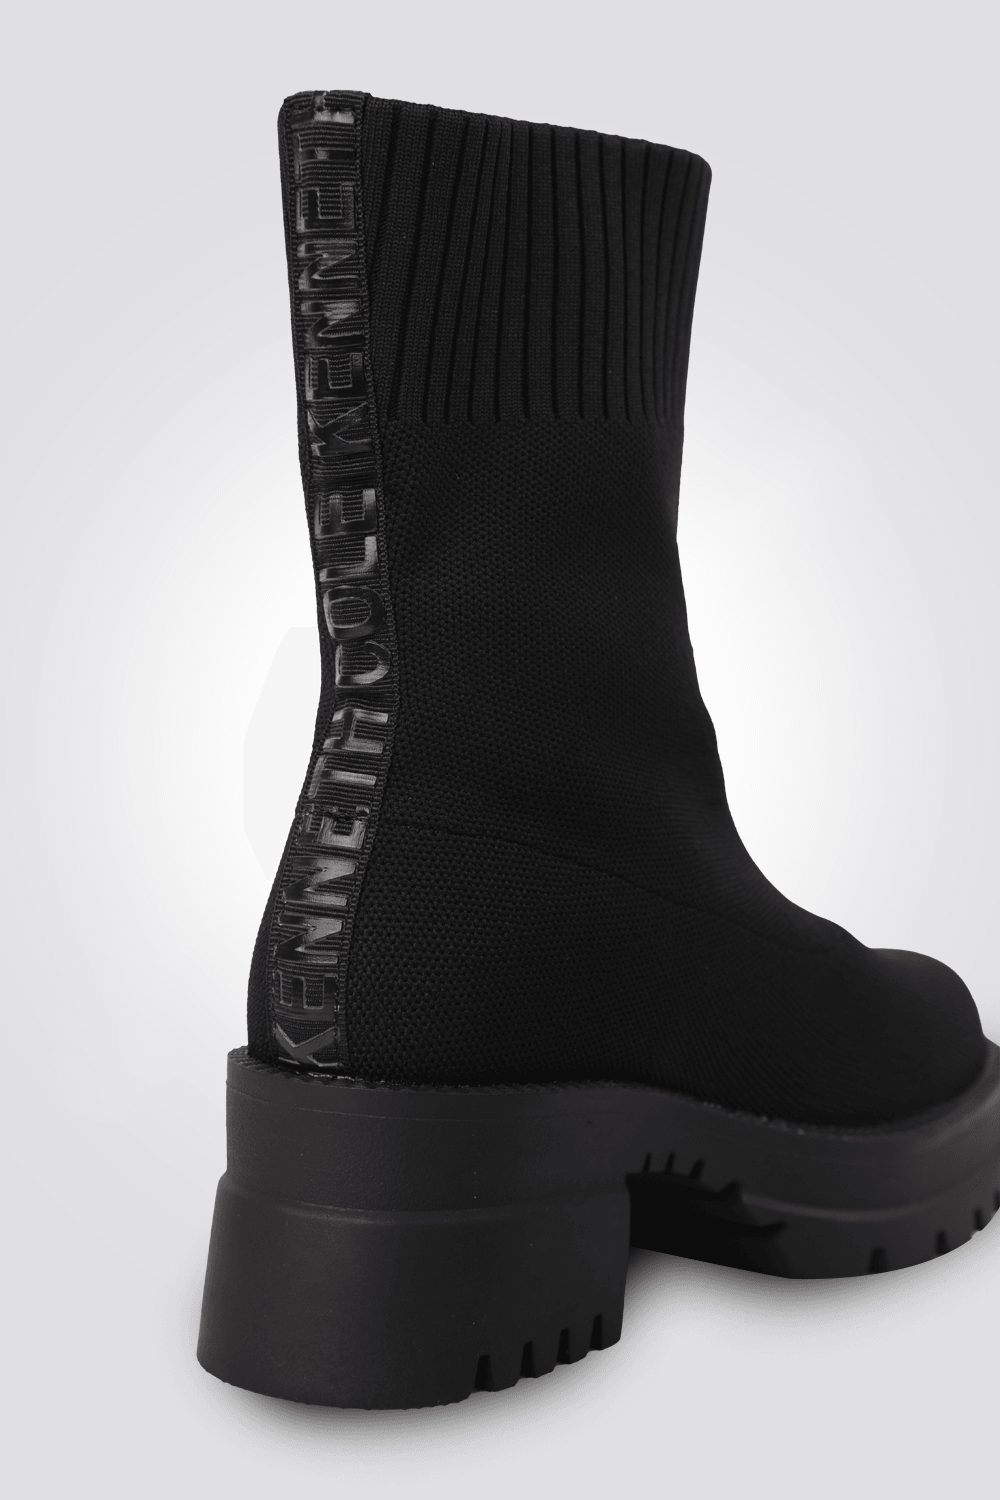 מגפיים לנשים בצבע שחור - MASHBIR//365